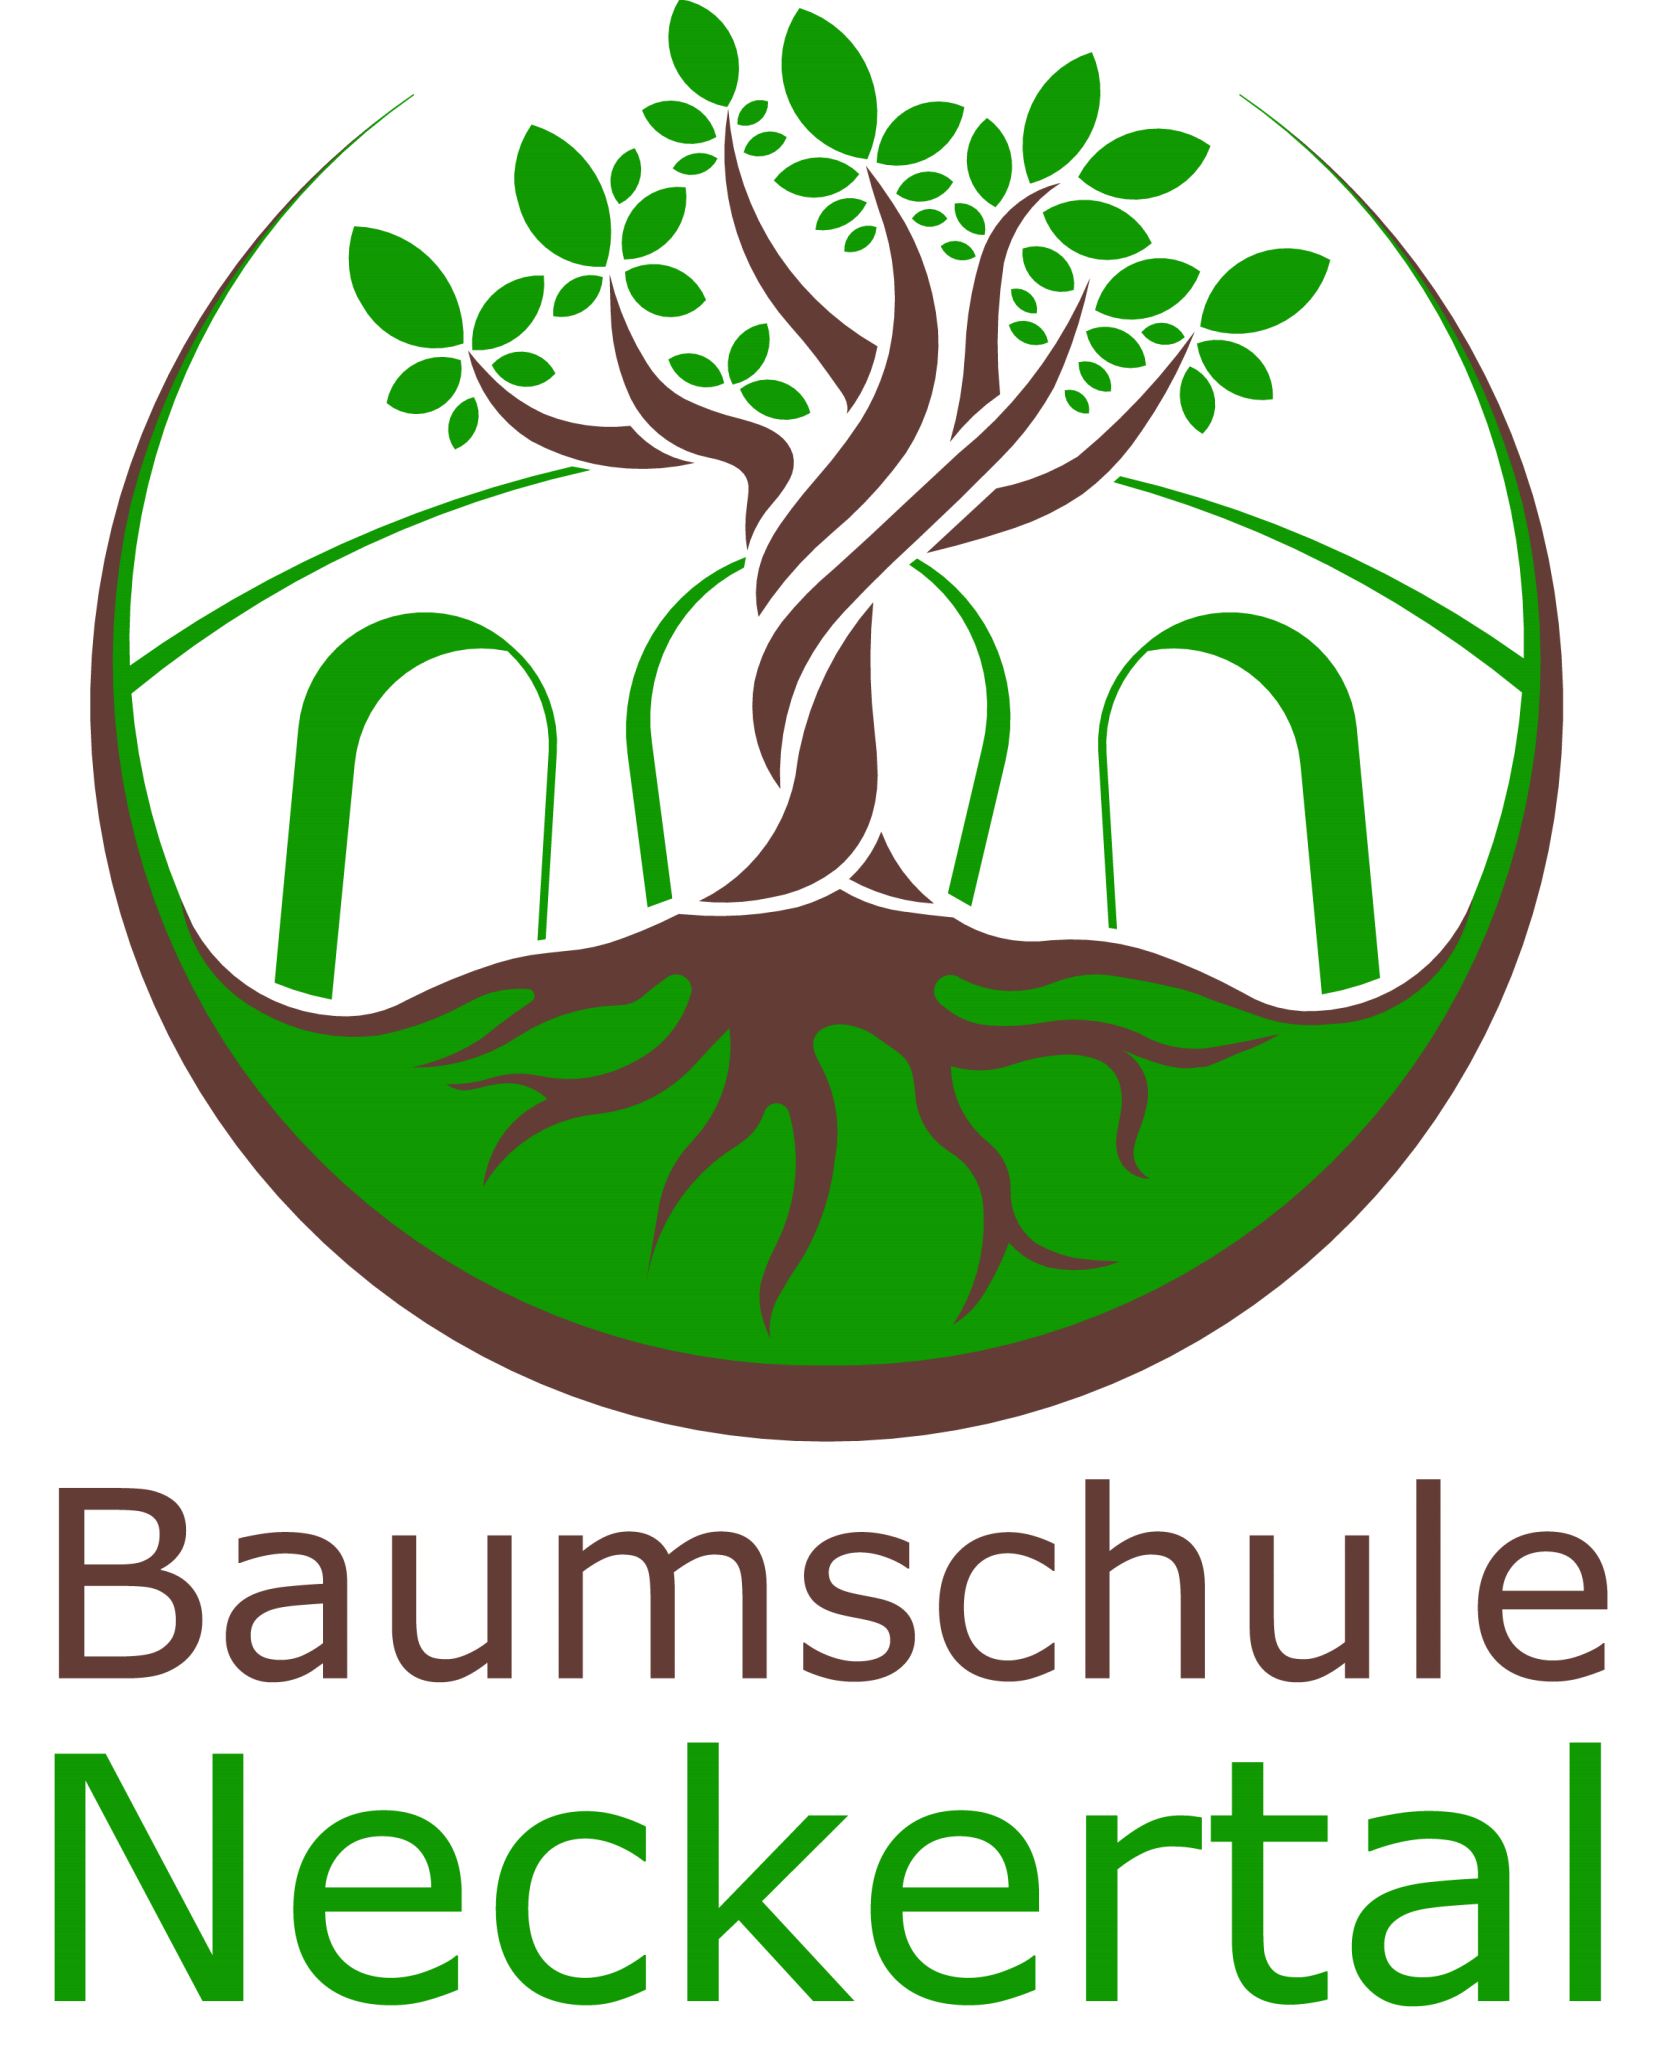 (c) Baumschule-neckertal.ch